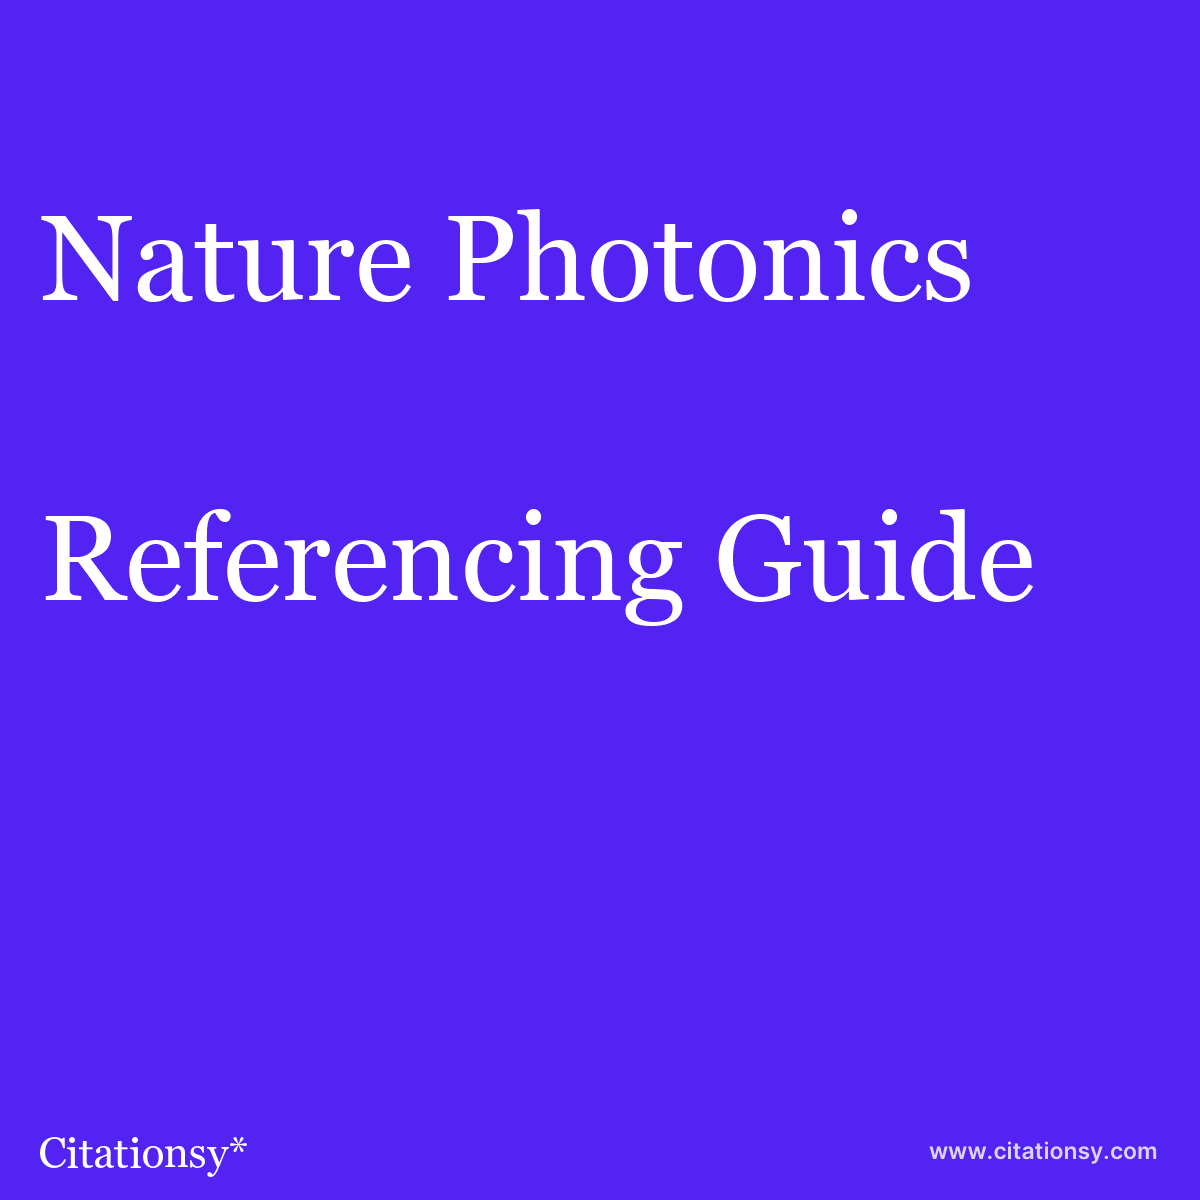 lancering en million Vild Nature Photonics Referencing Guide ·Nature Photonics citation · Citationsy